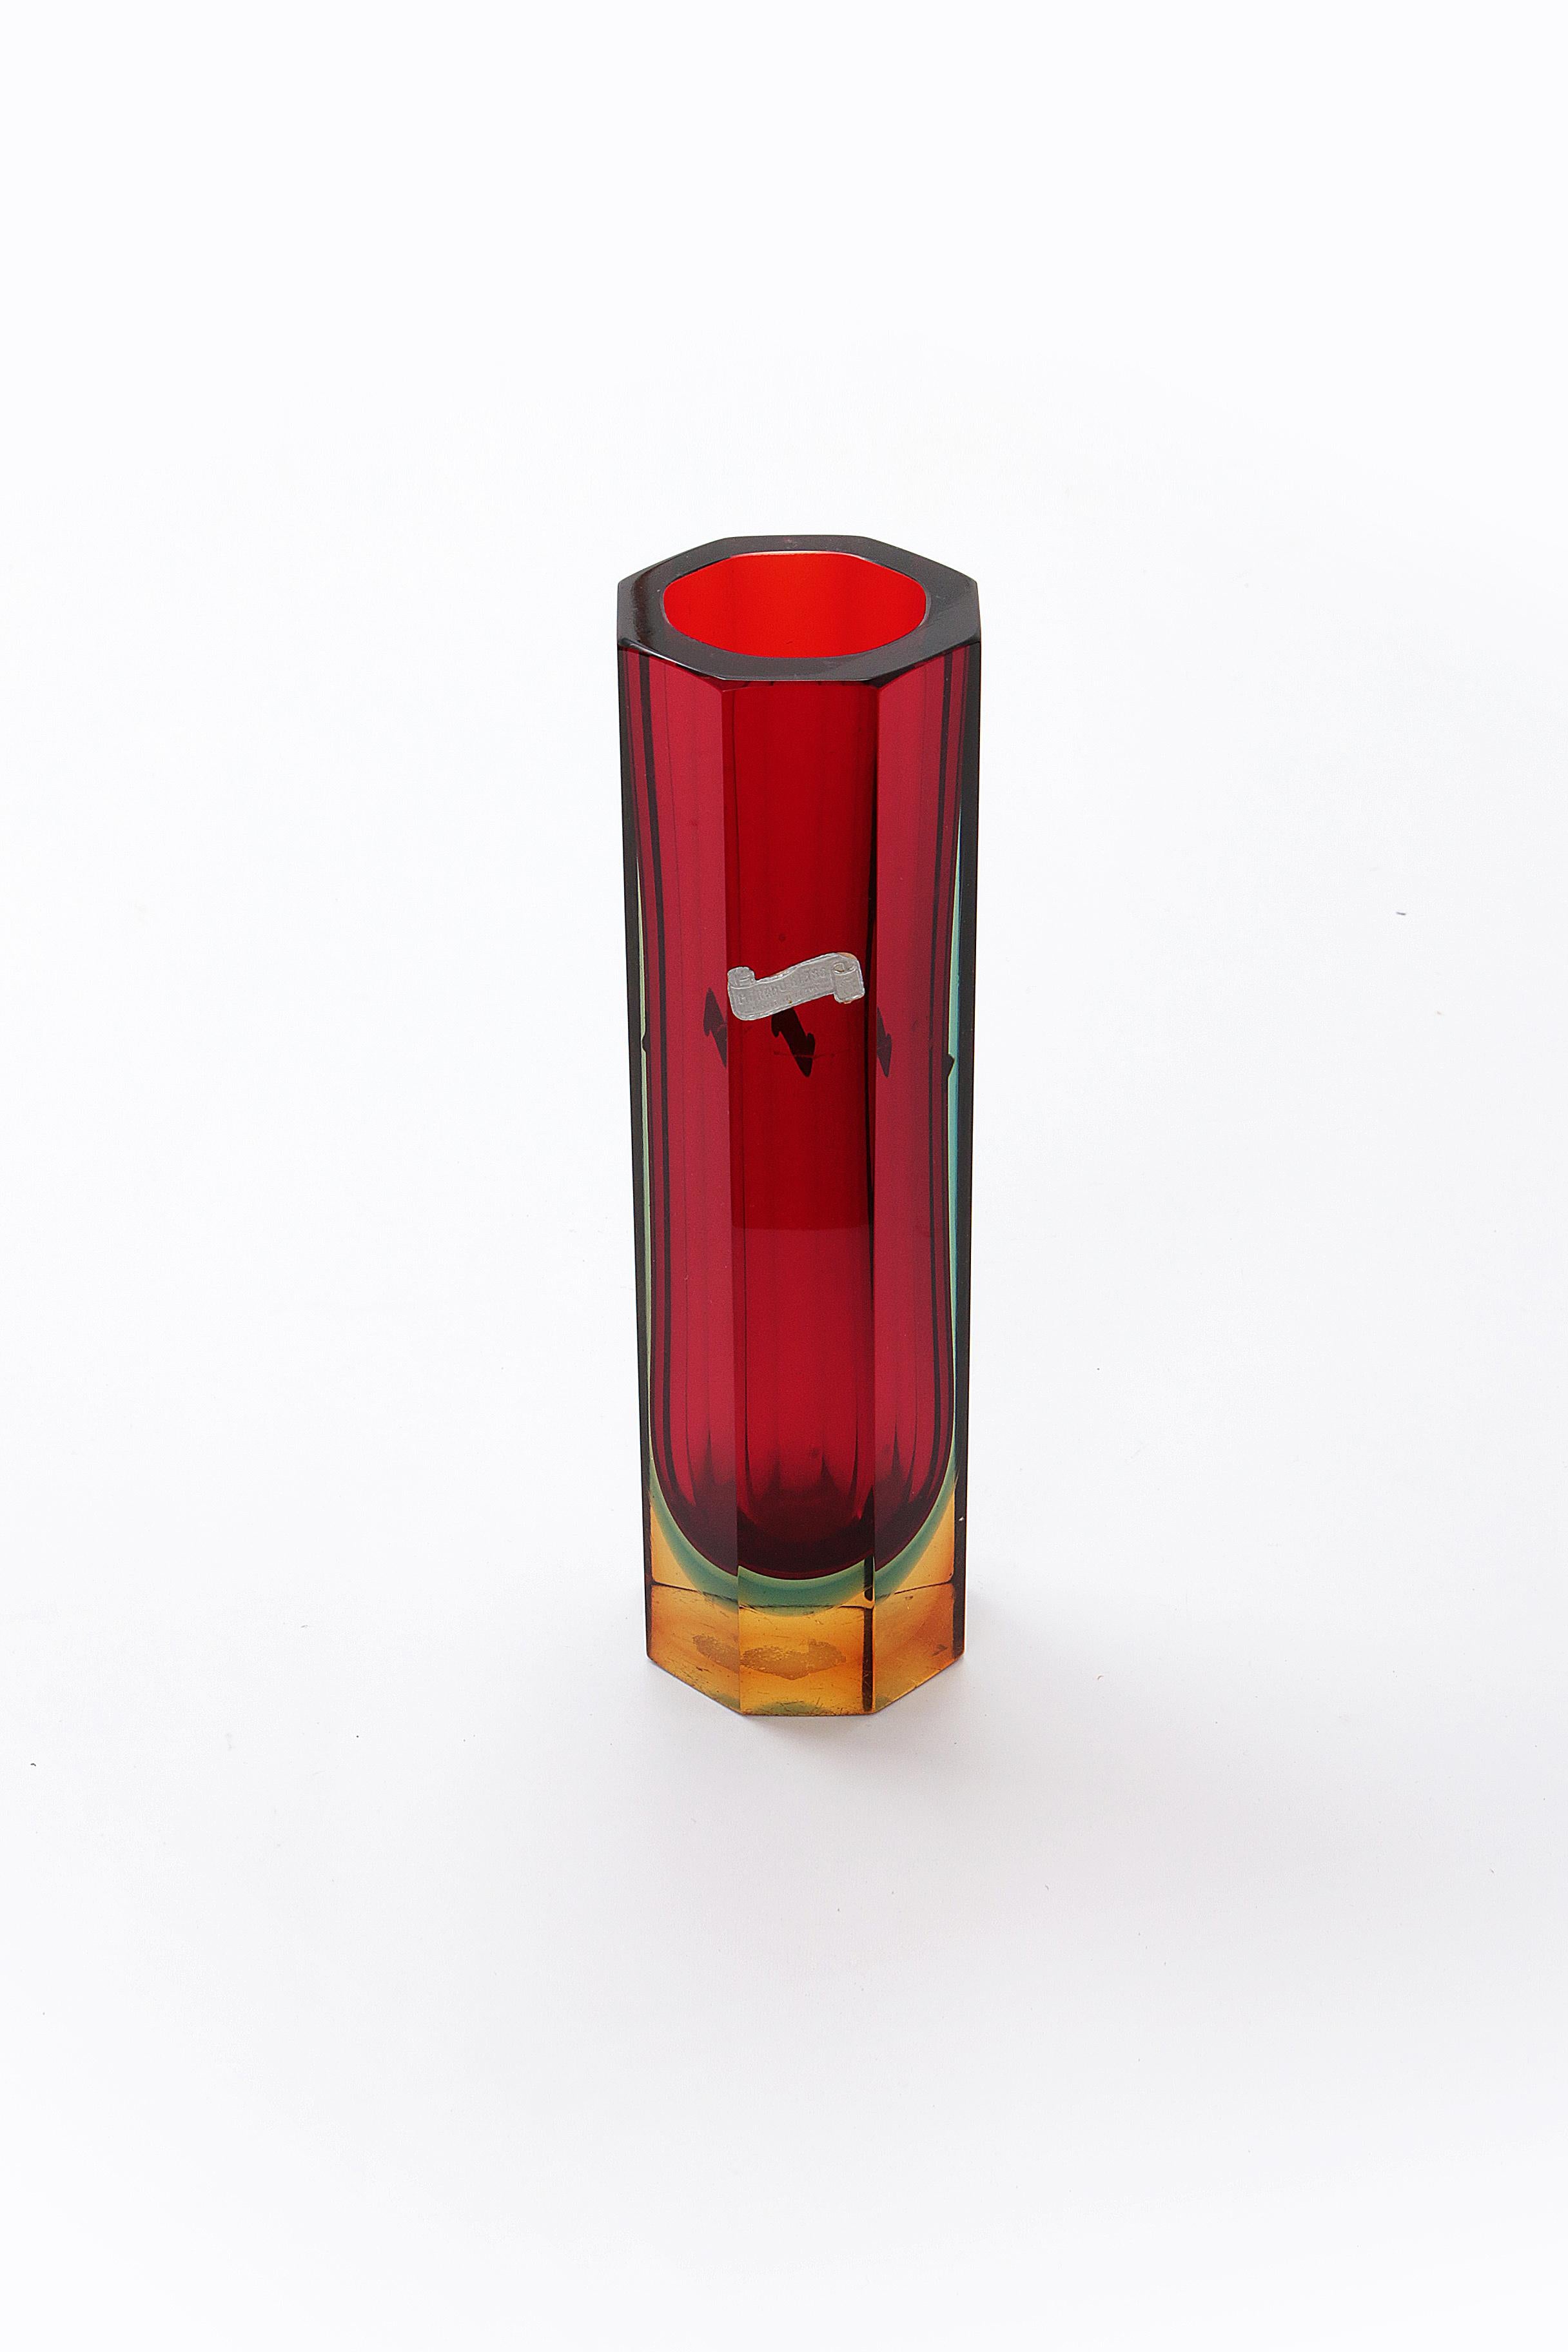 Murano Block Vase 8-seitig, die Farbe ist überwiegend rot mit grün, blau und gelb.

Vintage Design Vase Murano quadratische Blockvase rot/blau, intakt, hergestellt von Kristall/Glas Meister Flavio Poli (1900-1984).

Er war ein italienischer